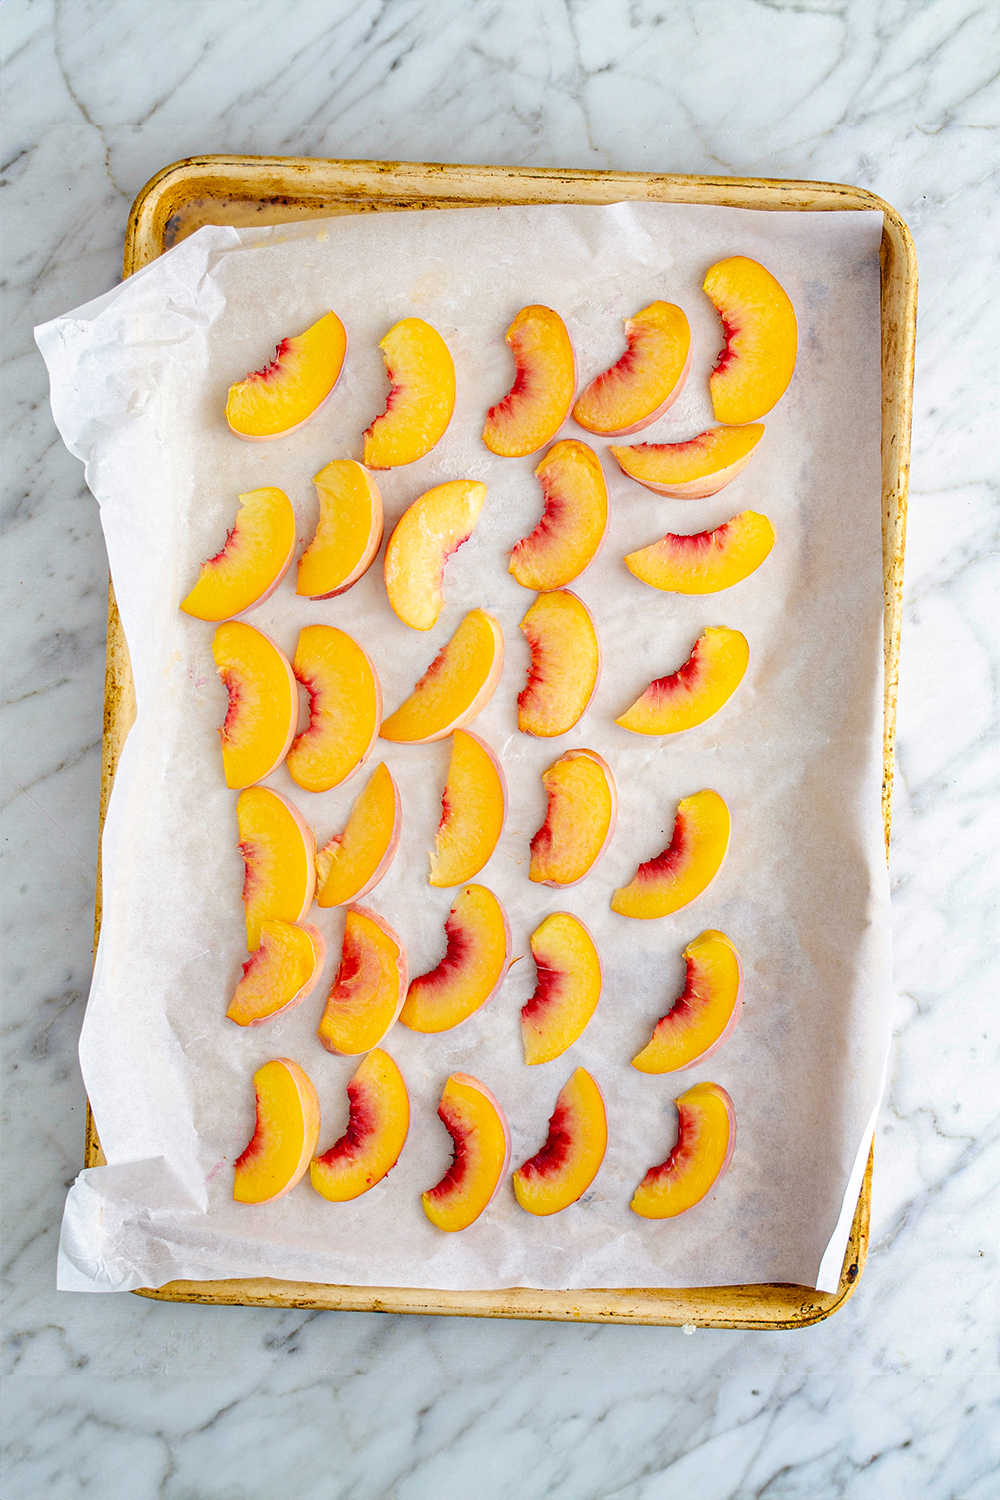 How to Ripen Peaches, How to ripen peaches overnight, How to ripen nectarines, Ripening peaches, Make peaches ripen faster